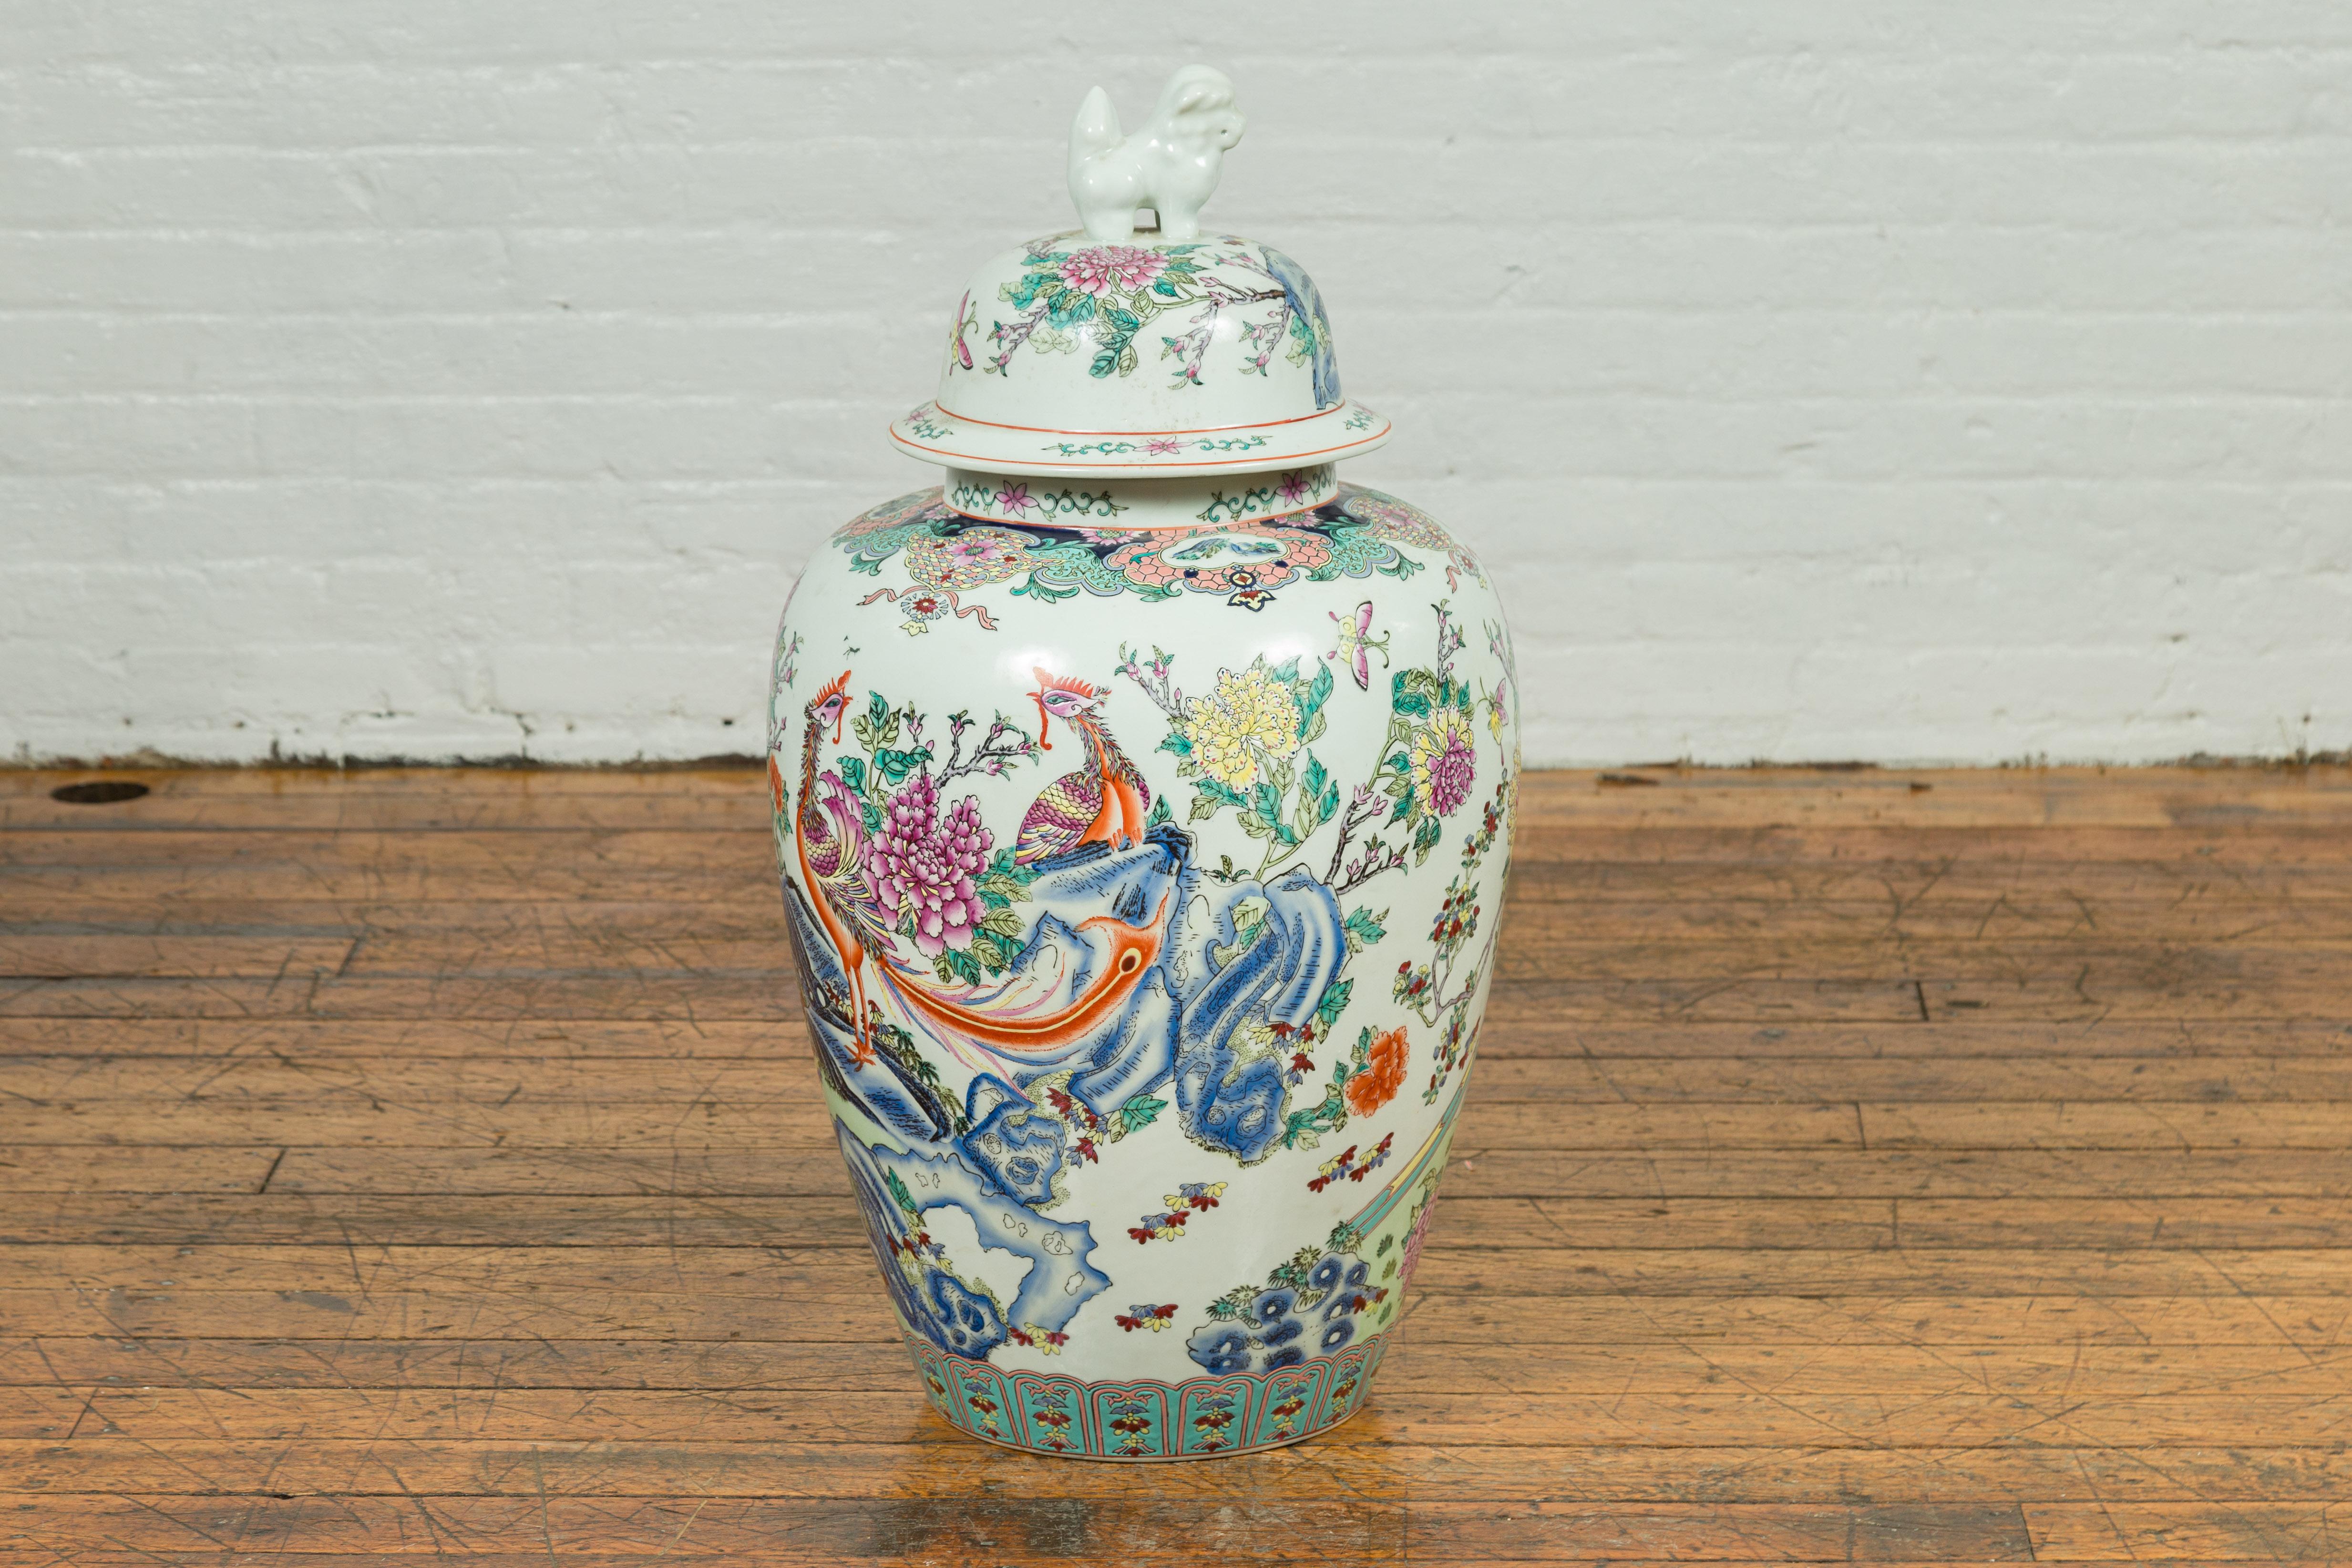 Une jarre de palais chinoise vintage du milieu du 20e siècle, faite à la main et peinte sur porcelaine et surmontée d'une figure animale. Cette grande jarre représente un phénix parmi des rochers et des fleurs. Ce thème des fleurs et des oiseaux est